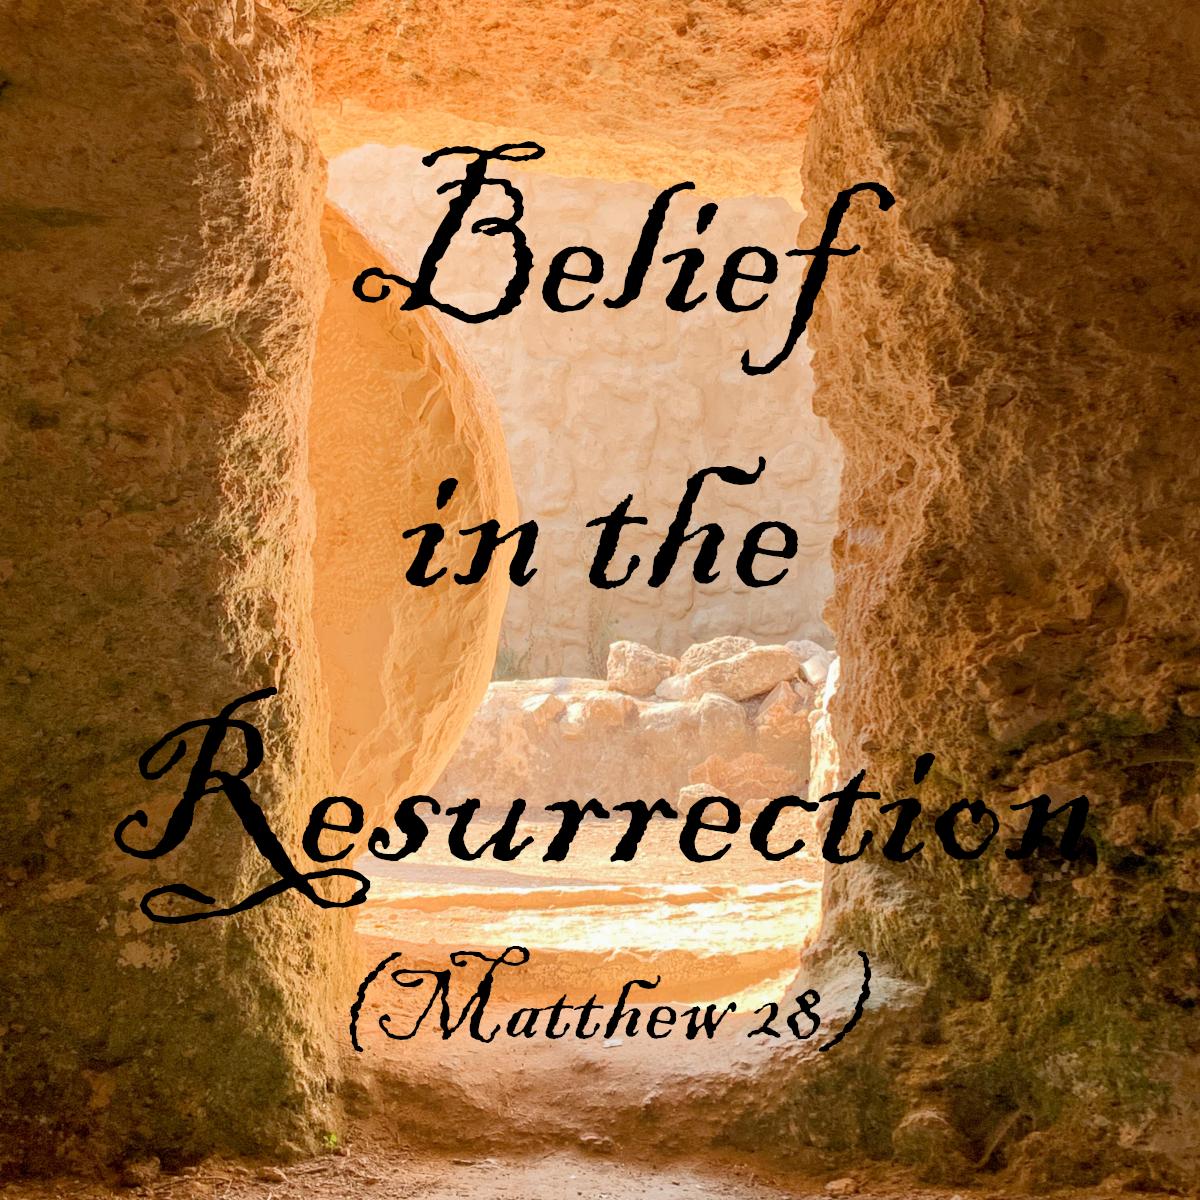 20230409 - Belief in the Resurrection (Matthew 28) by Joey Morrison